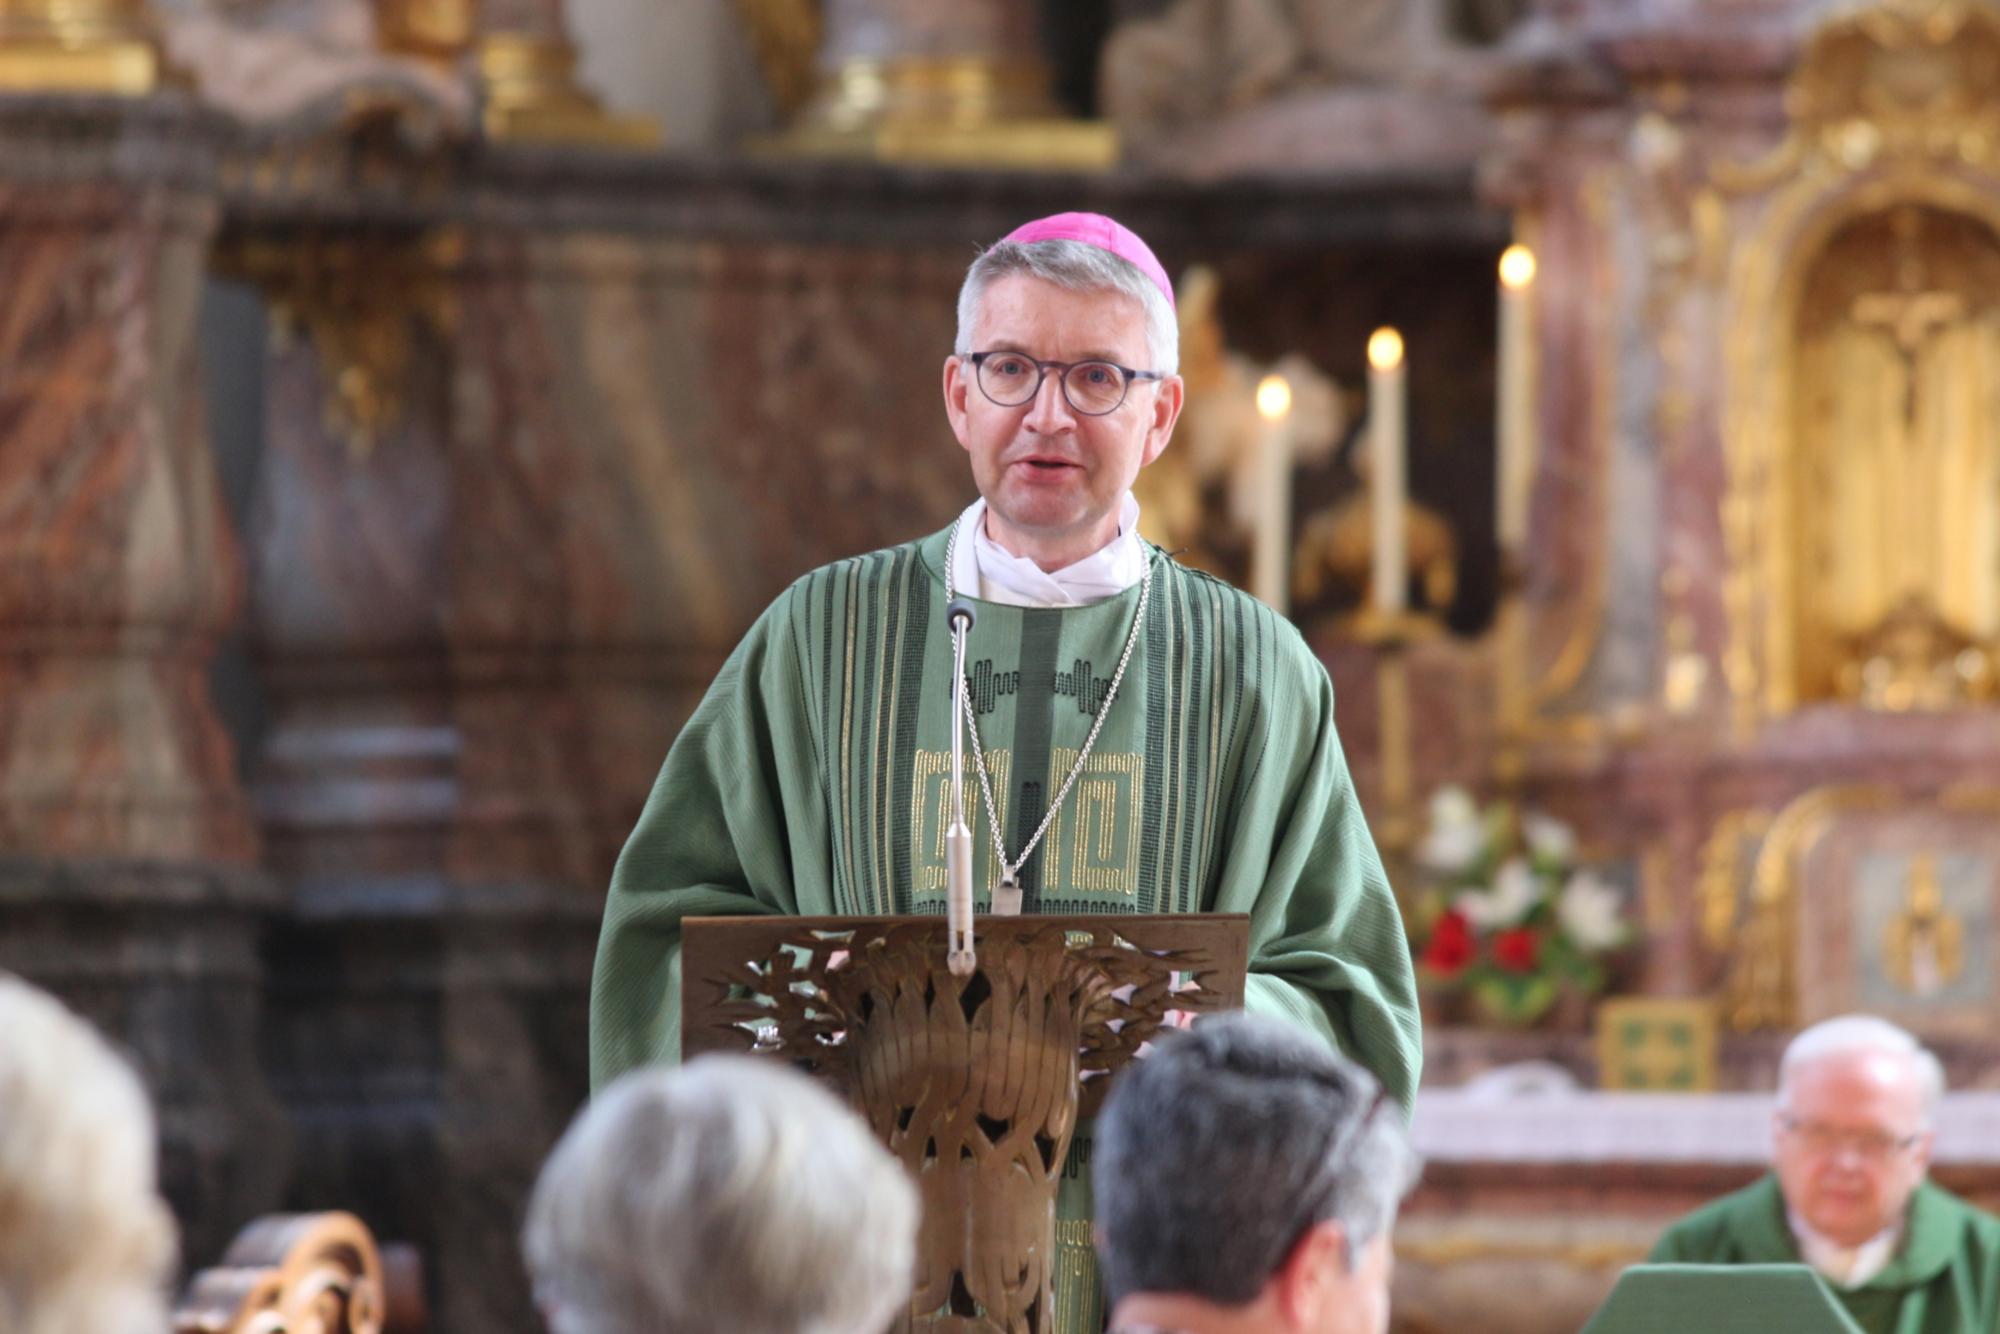 Mainz, 8. Juni 2022: Bischof Peter Kohlgraf bei seiner Predigt zum Jubiläum des Berufsverbandes der Pfarrhaushälterinnen. (c) Bistum Mainz / Blum